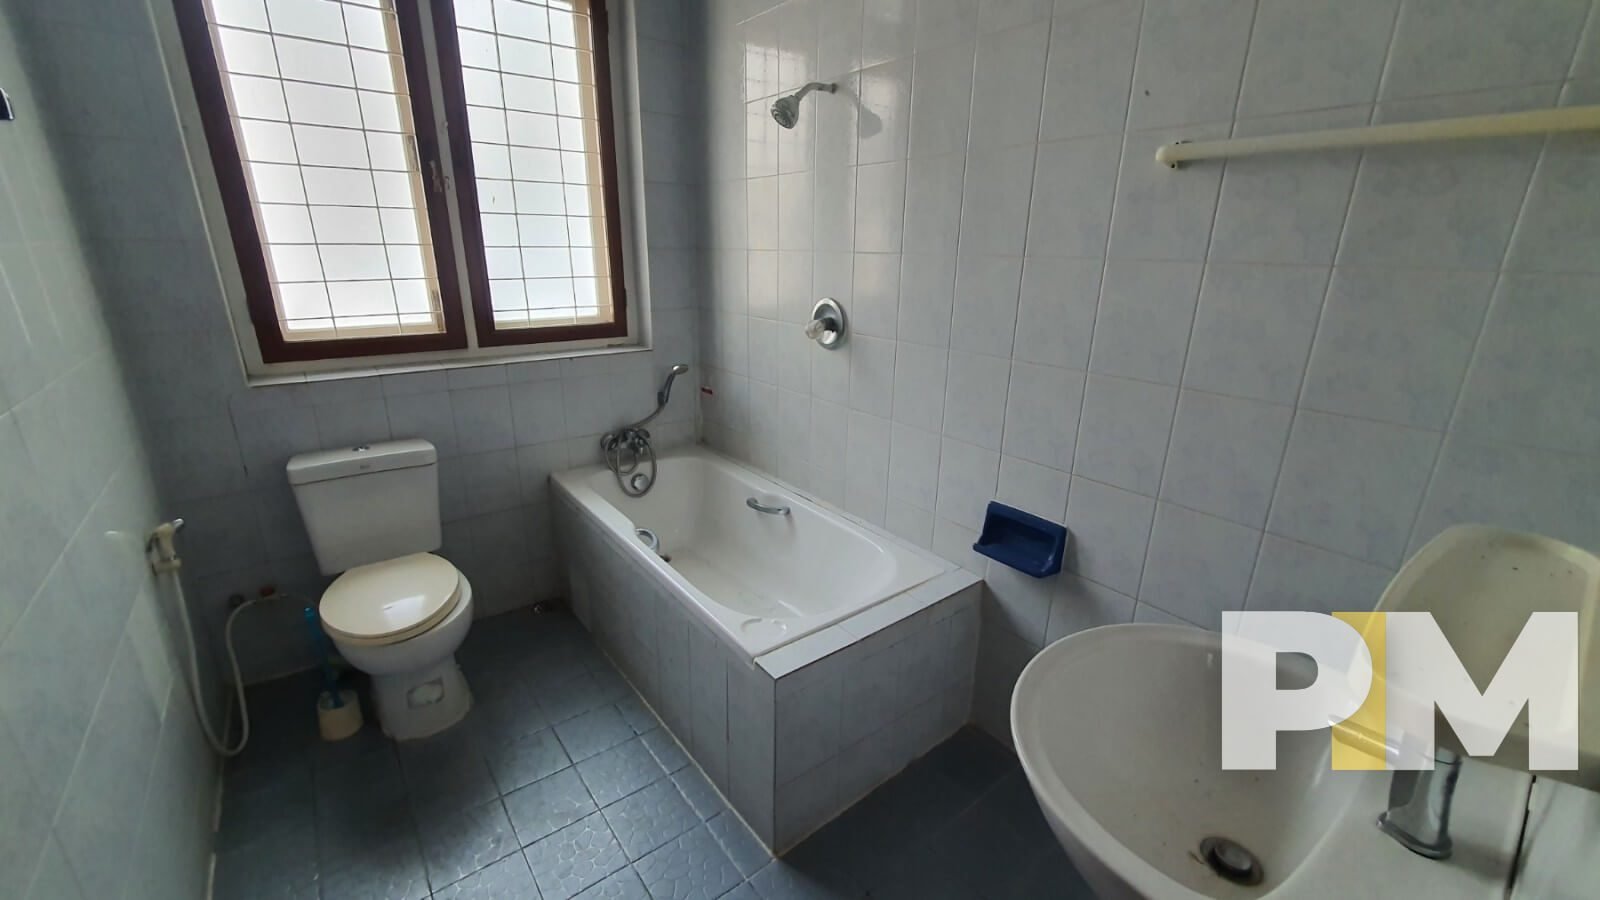 bathroom with bathtub - Yangon Real Estate